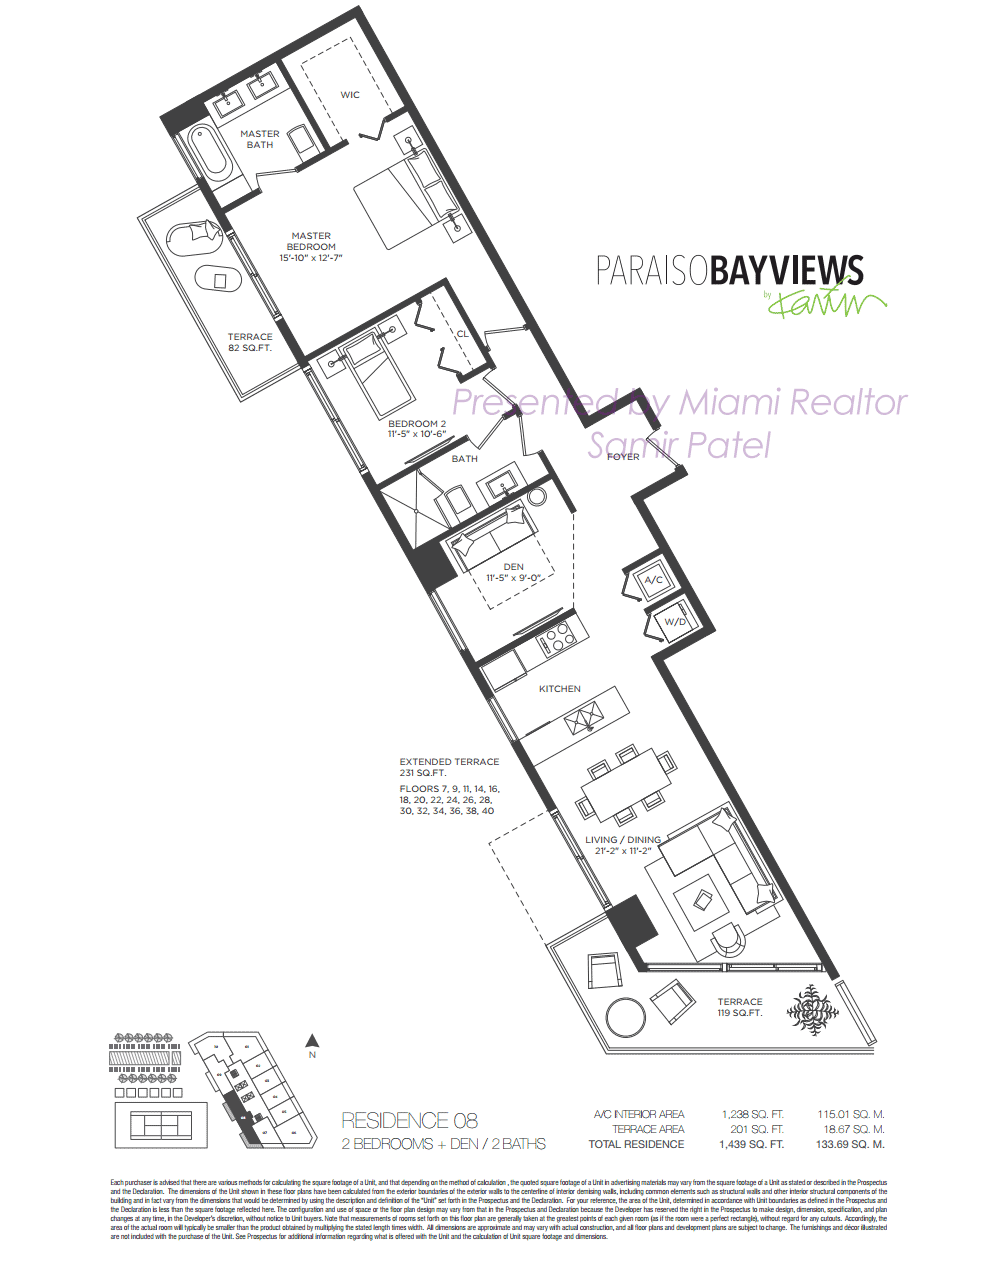 Floorplan of Paraiso Bayviews Condominium of 08 Line in Building